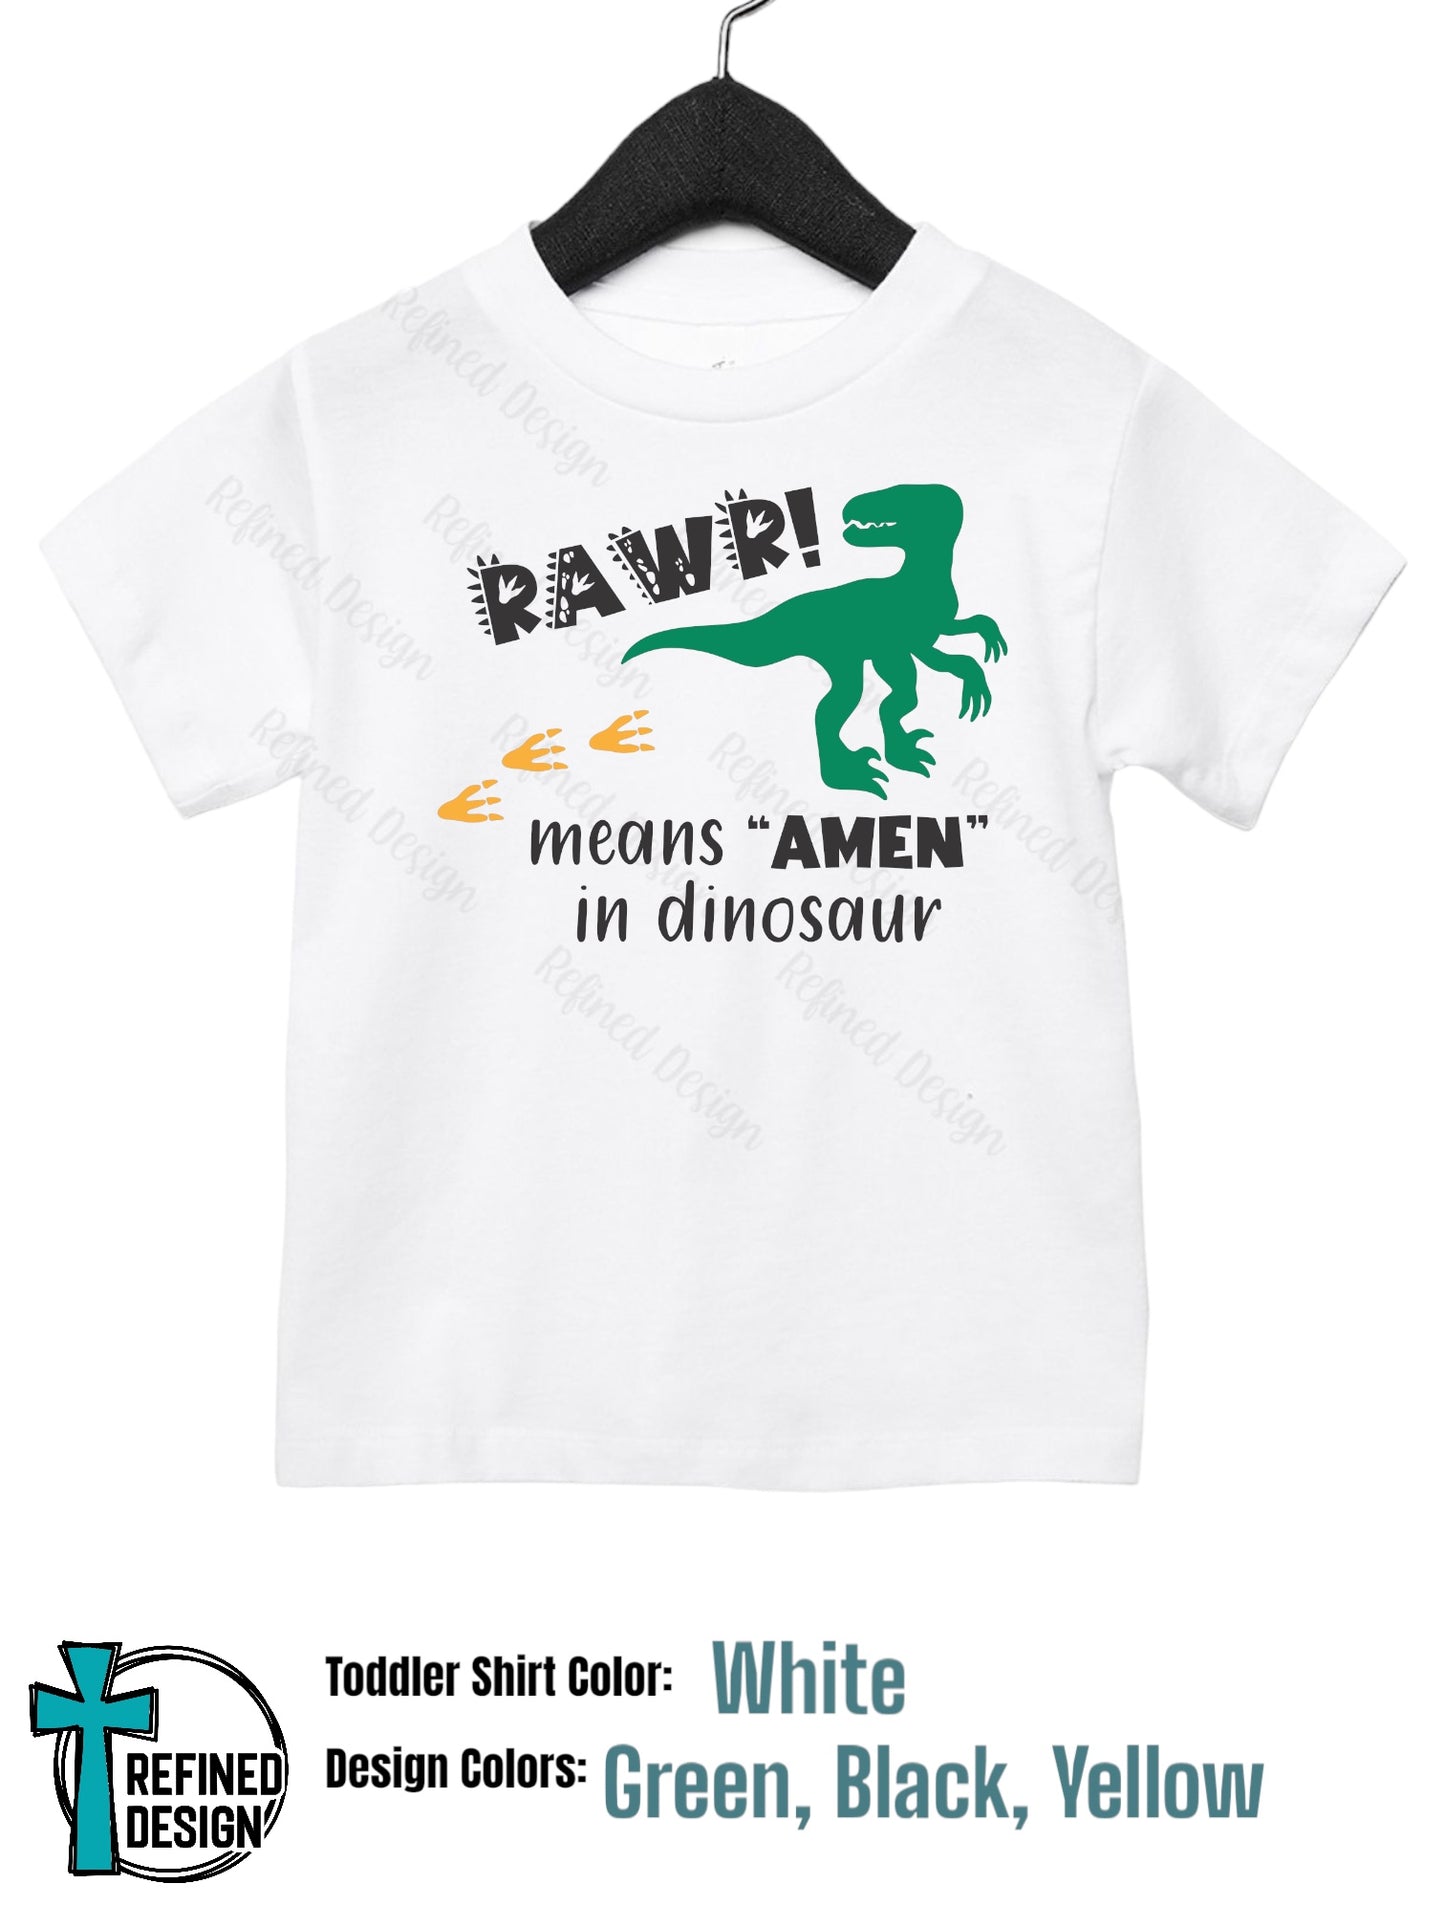 “Rawr means Amen” Toddler Shirt